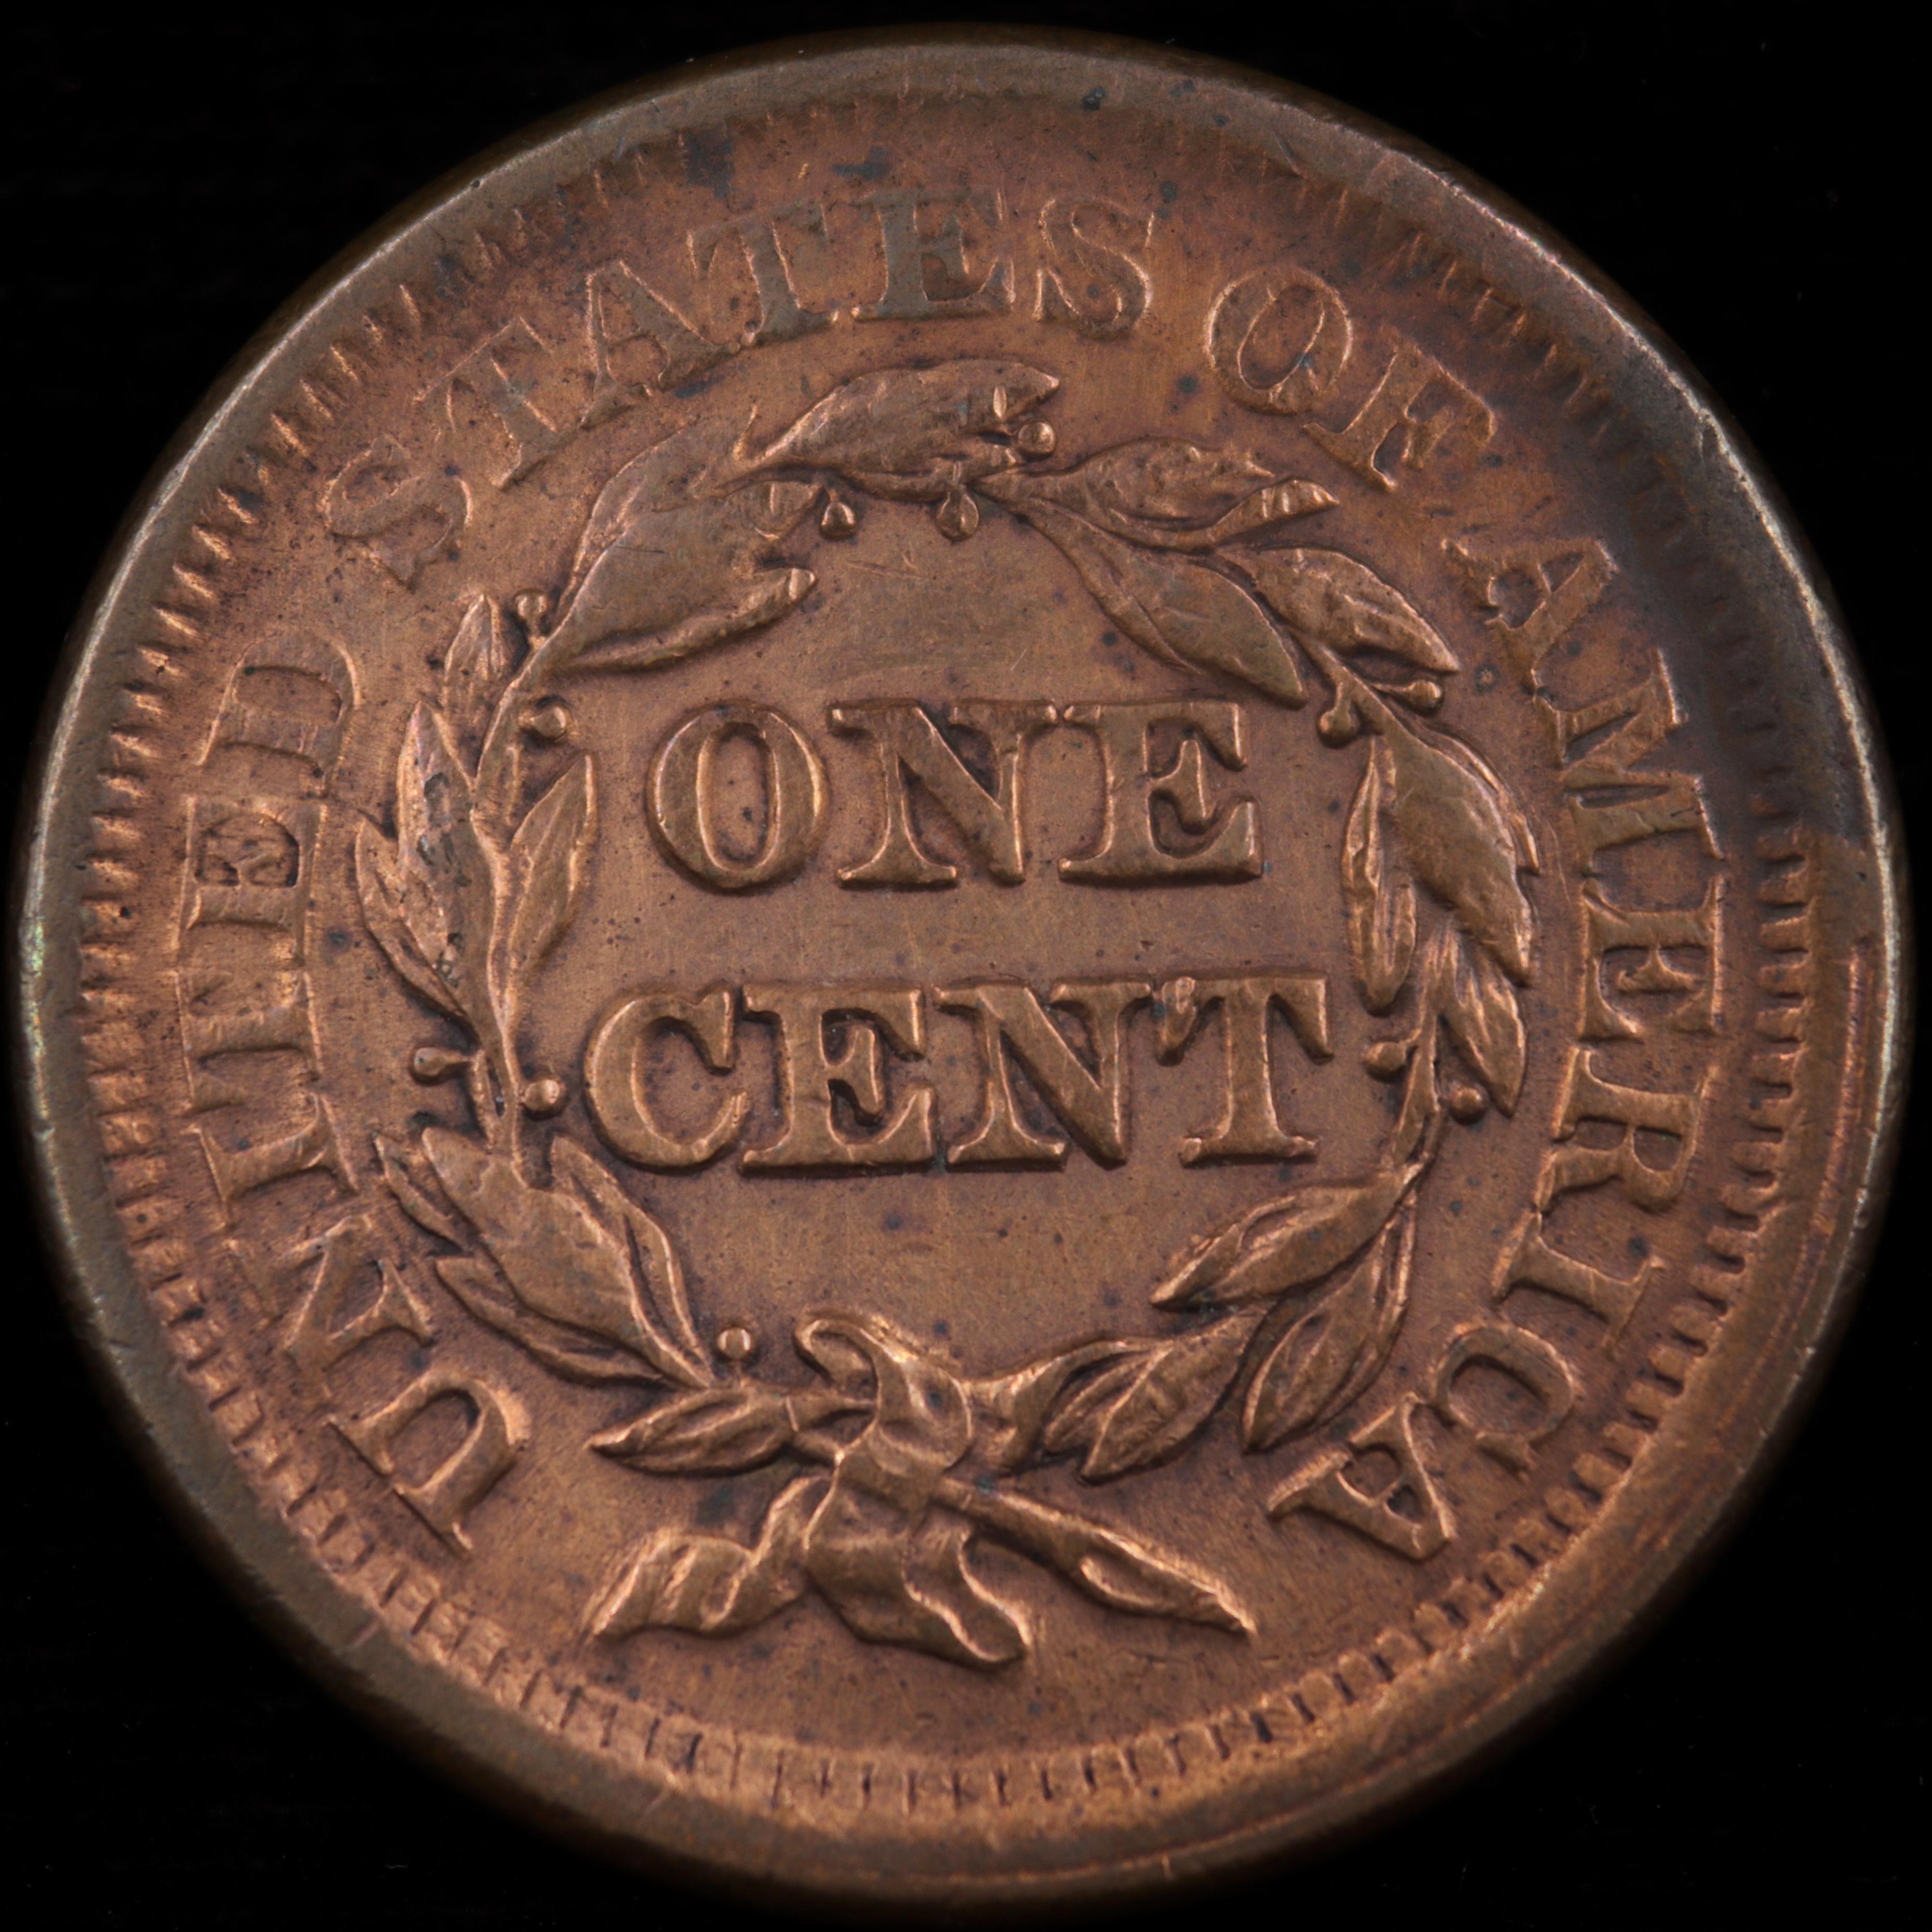 1851 U.S. braided hair large cent